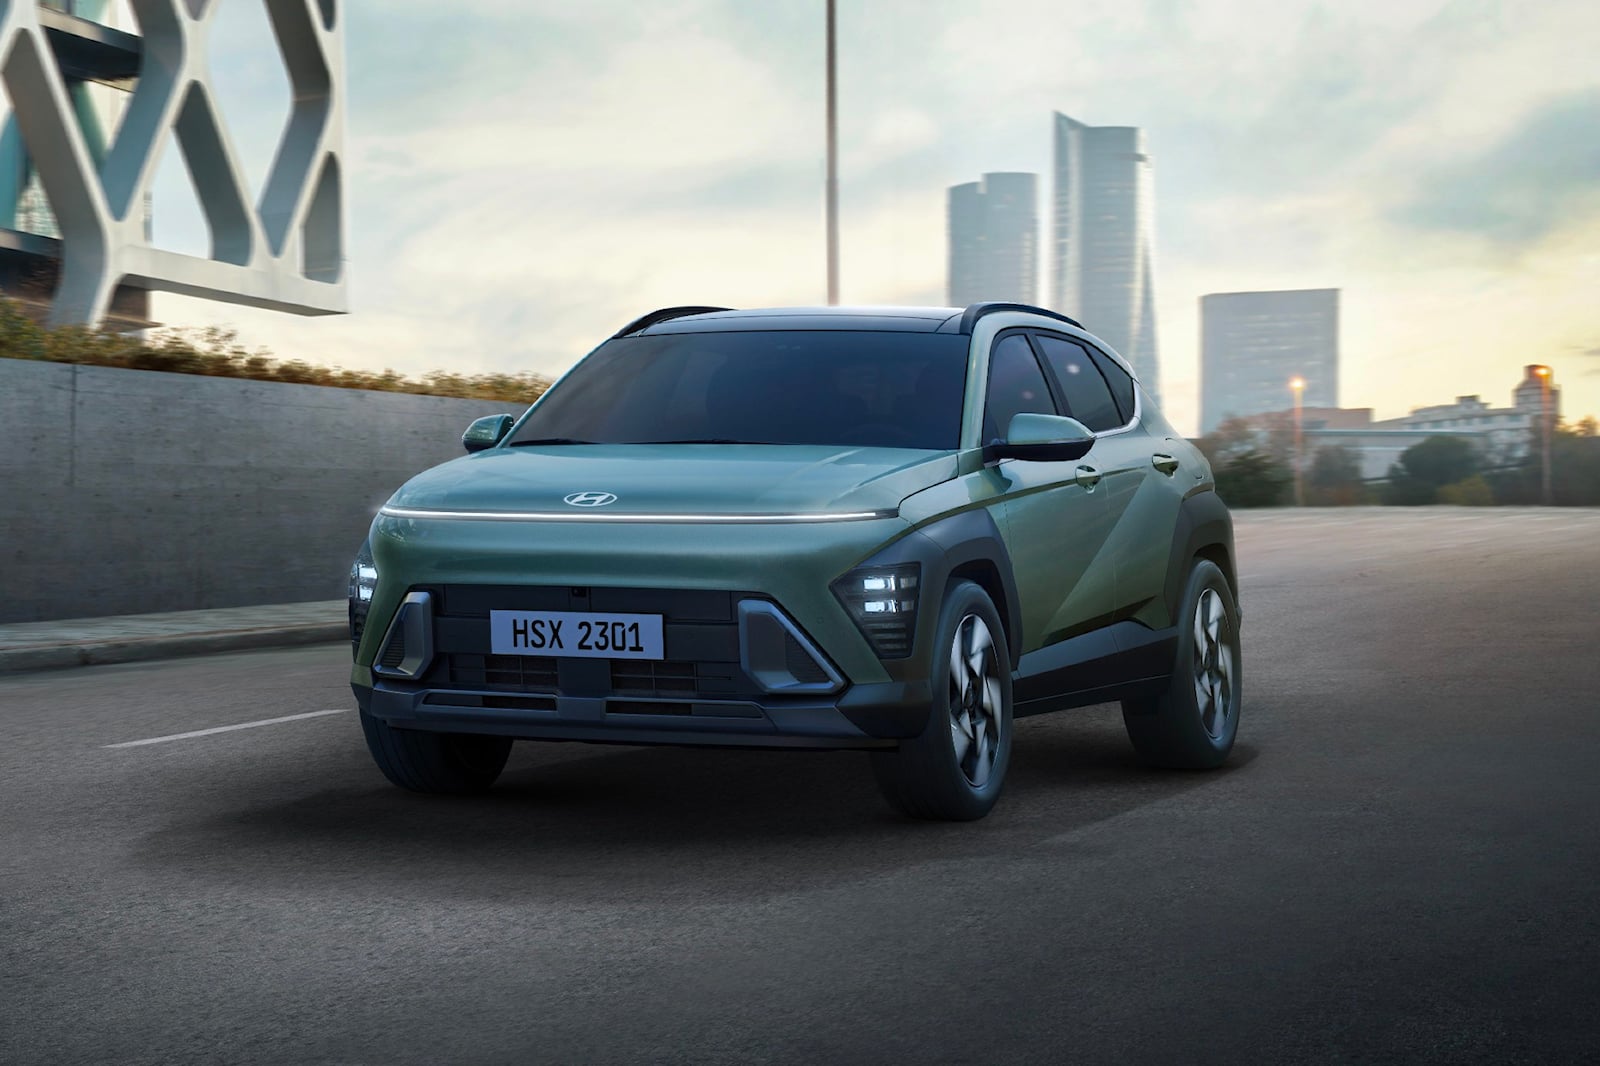 Kona также будет предлагаться как гибридный и полностью электрический автомобиль. Hyundai пока не раскрывает дополнительных подробностей об электромобиле, но отмечает, что гибрид для корейского рынка будет использовать «специально откалиброванную» 1,